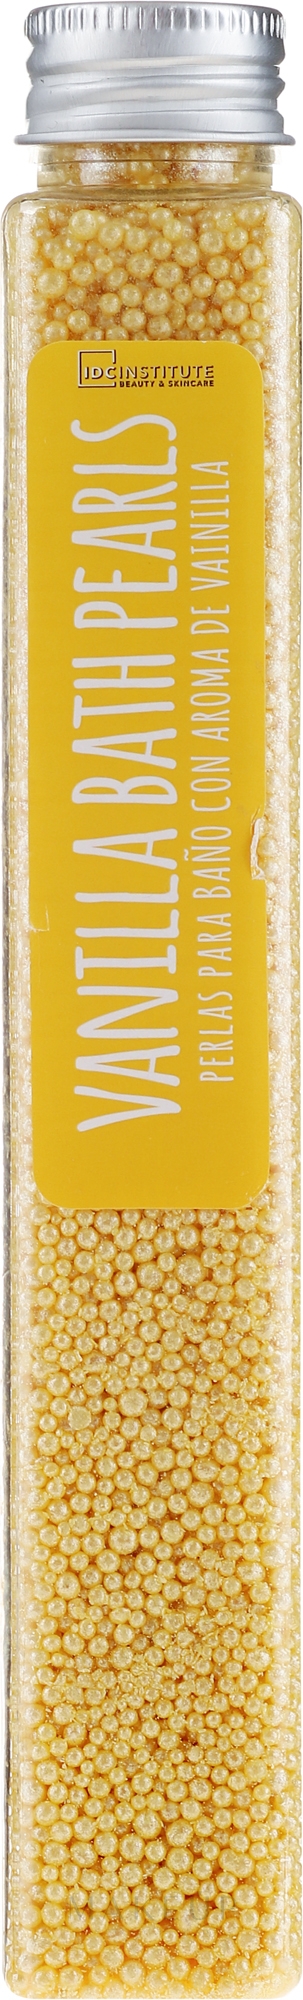 Badeperlen Vanille - IDC Institute Bath Pearls Vanilla — Bild 90 g